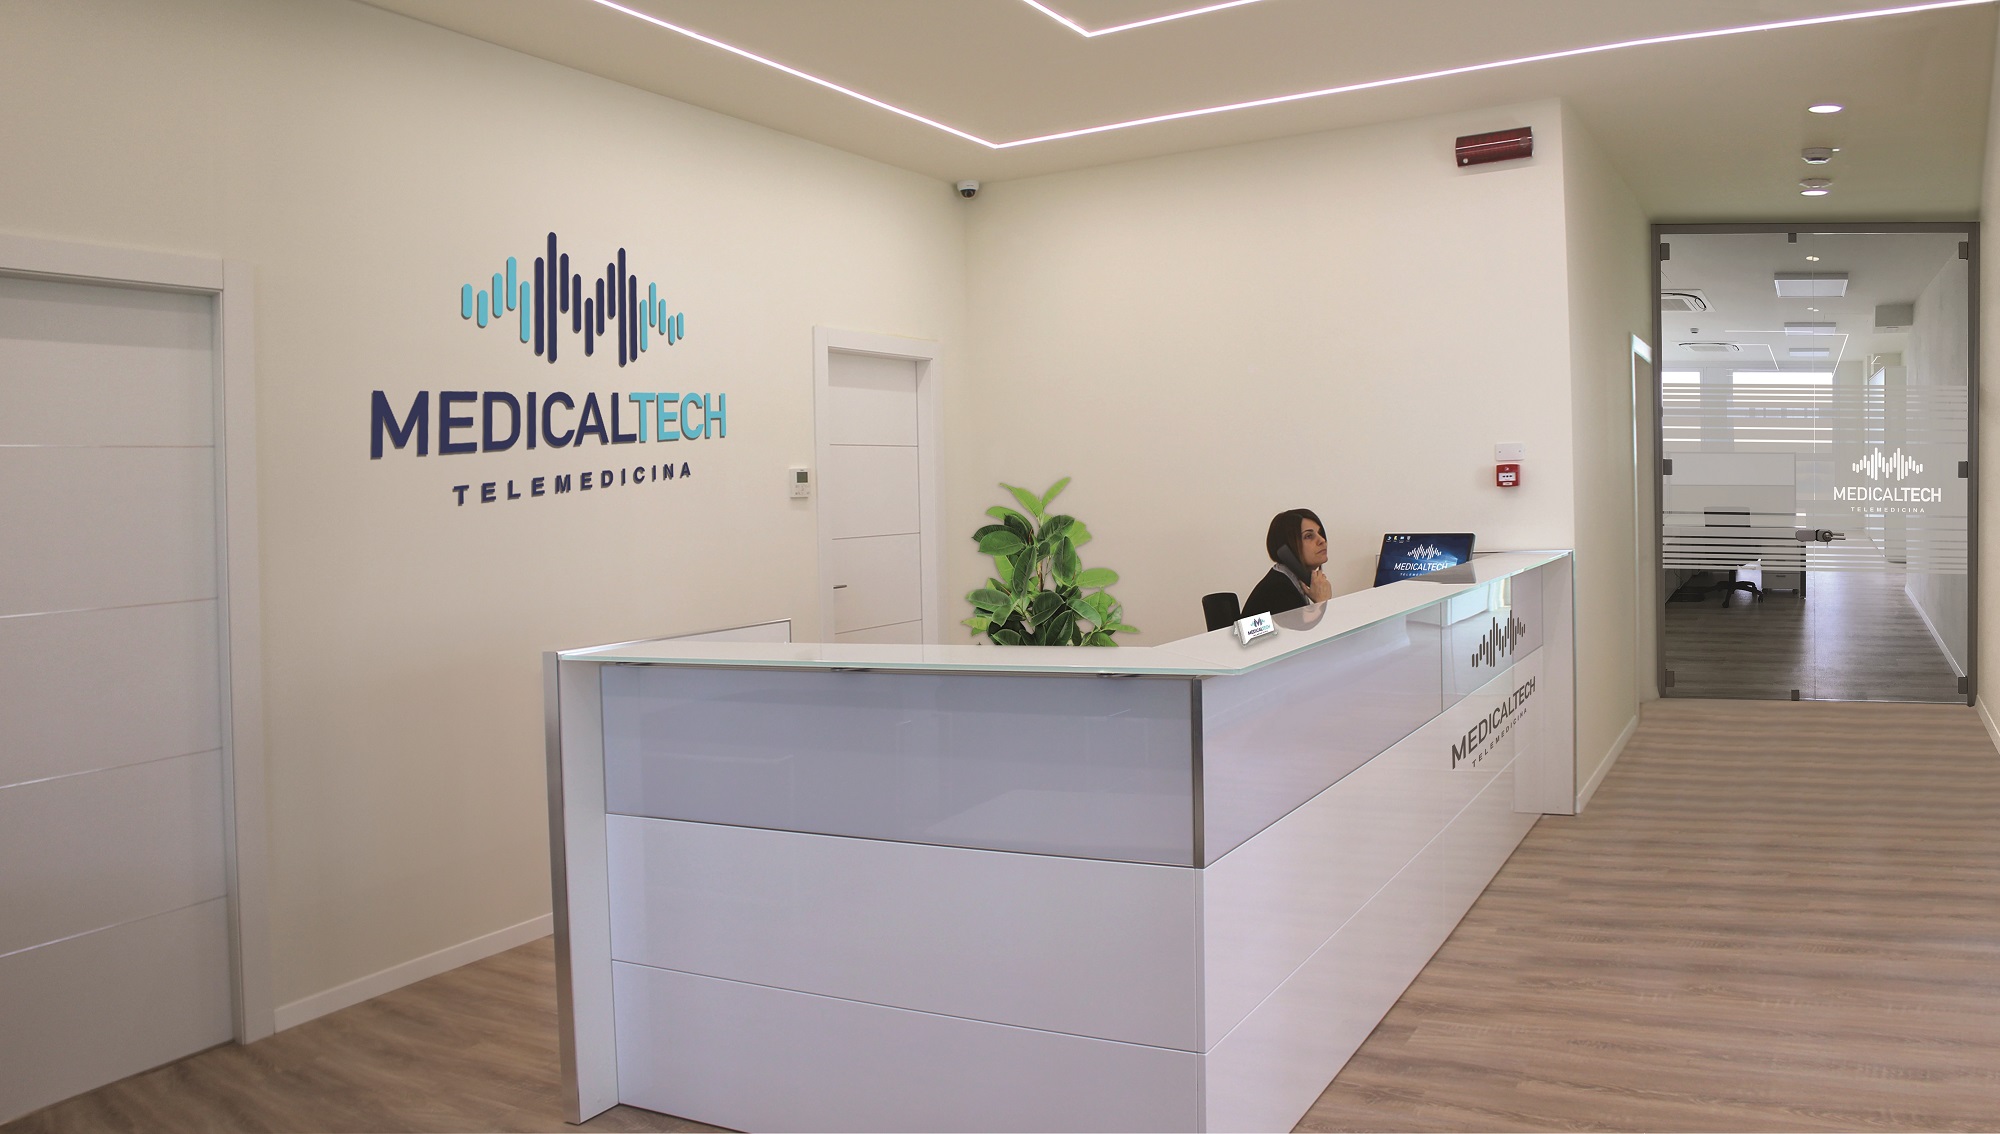 medicaltech_telemedicina_medico7